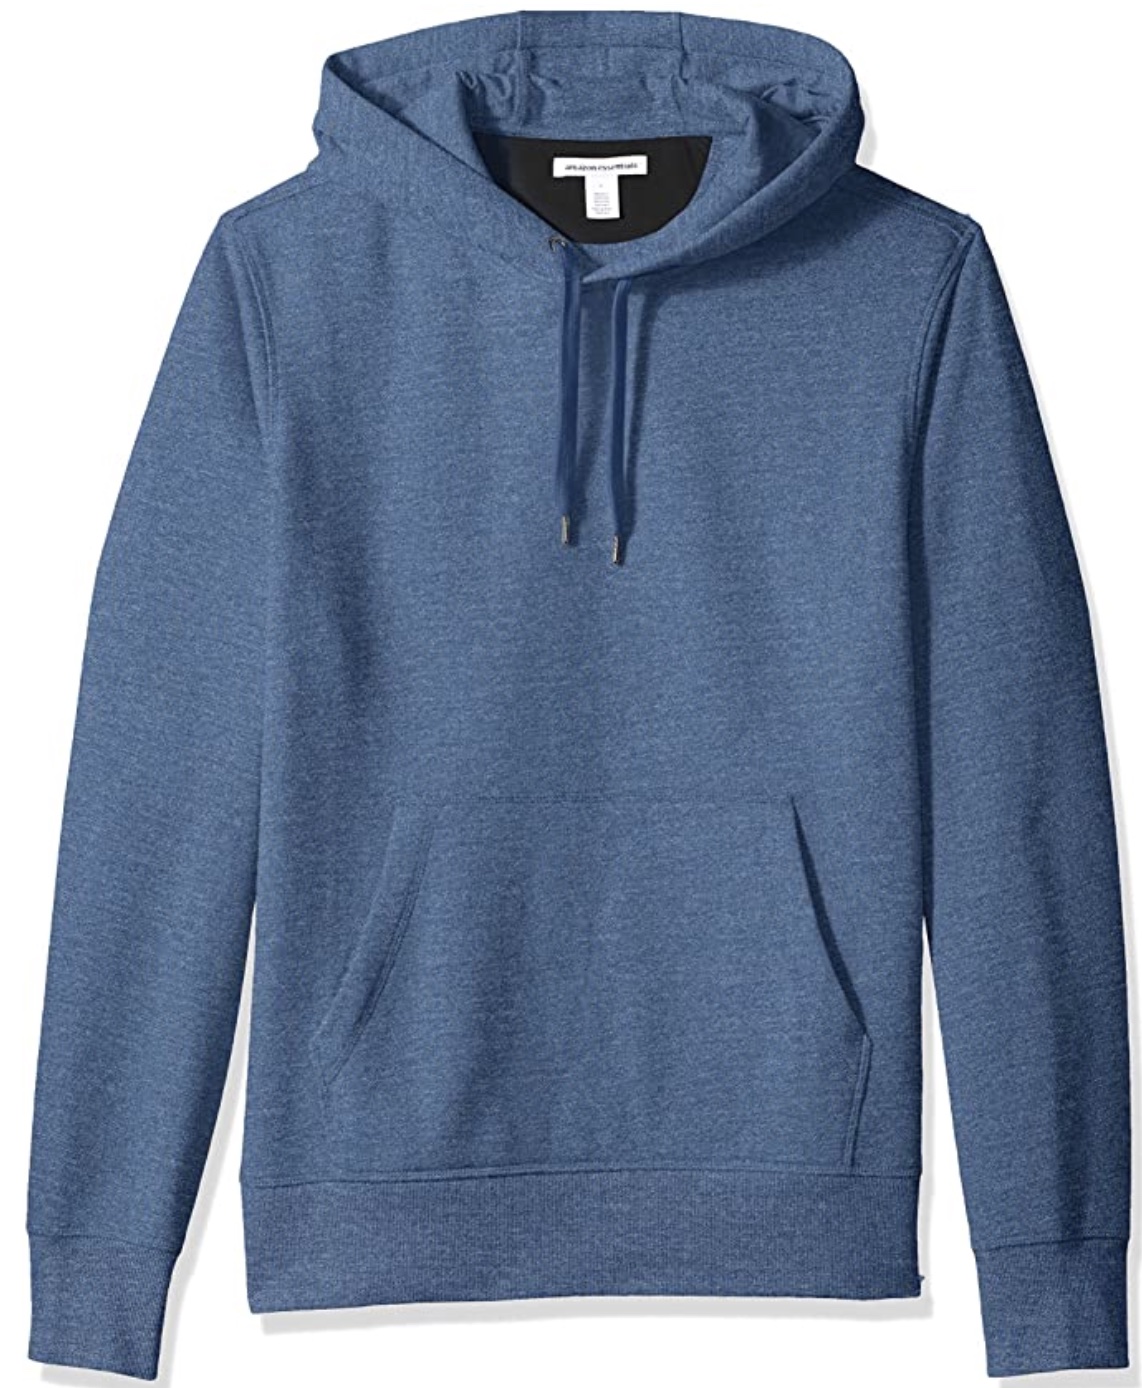 Amazon Basics hoodie.